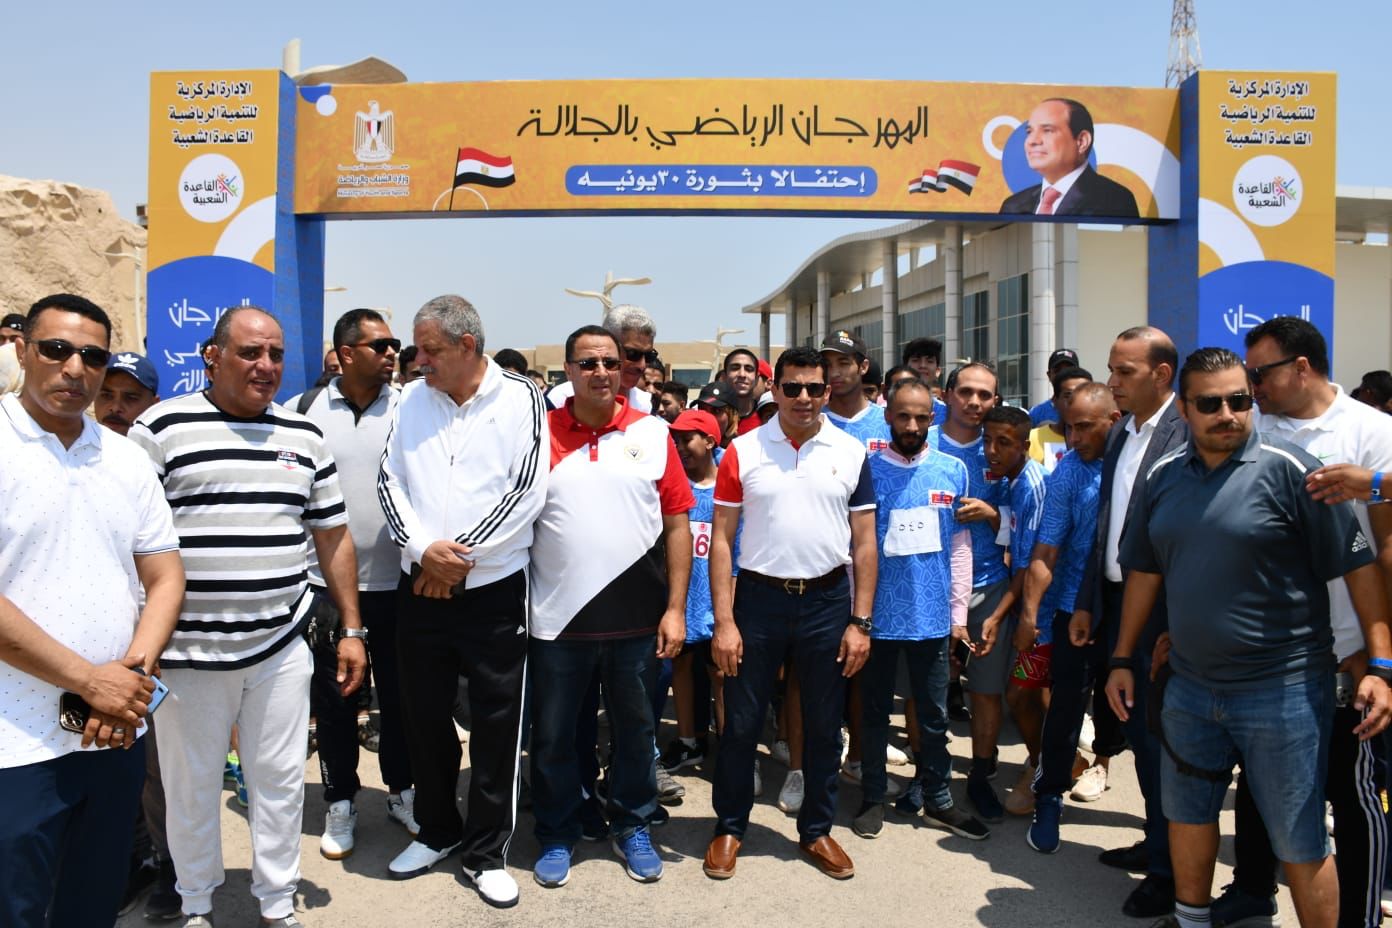 وزير الرياضة يطلق فعاليات النسخة الثانية من مهرجان الجلالة (1)